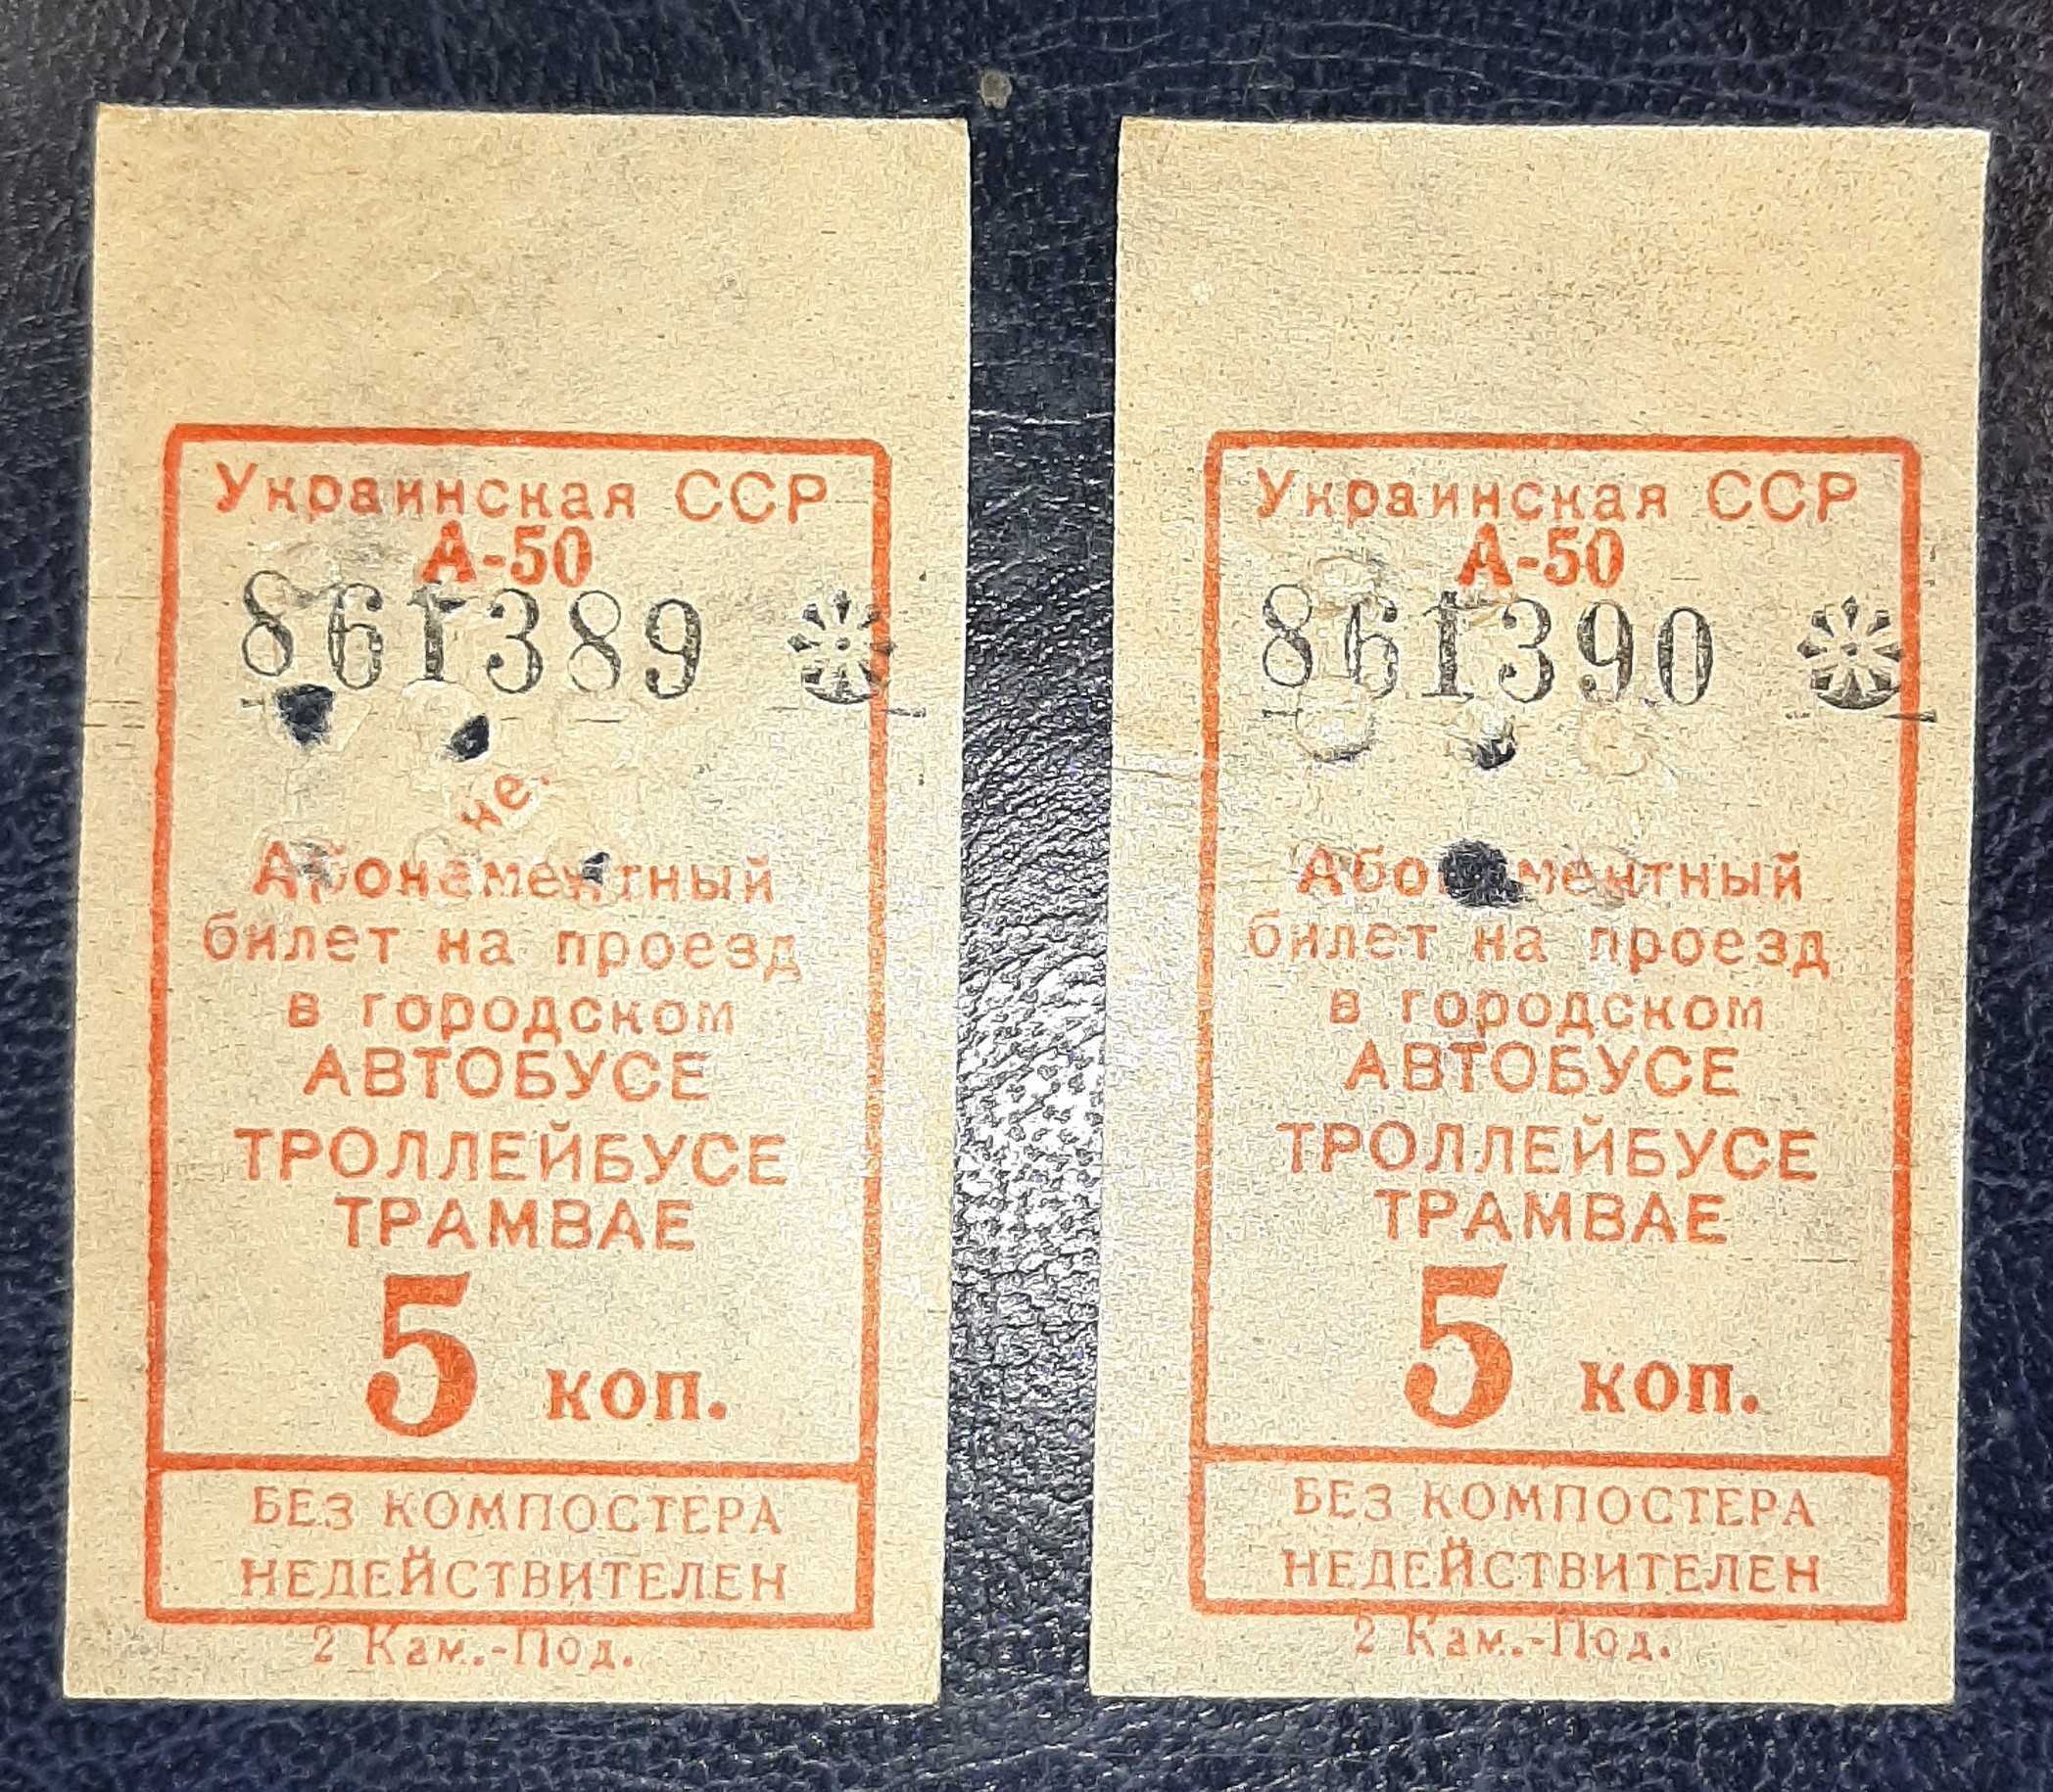 Абонементный билет на проезд в транспорте, времён УССР (СССР)